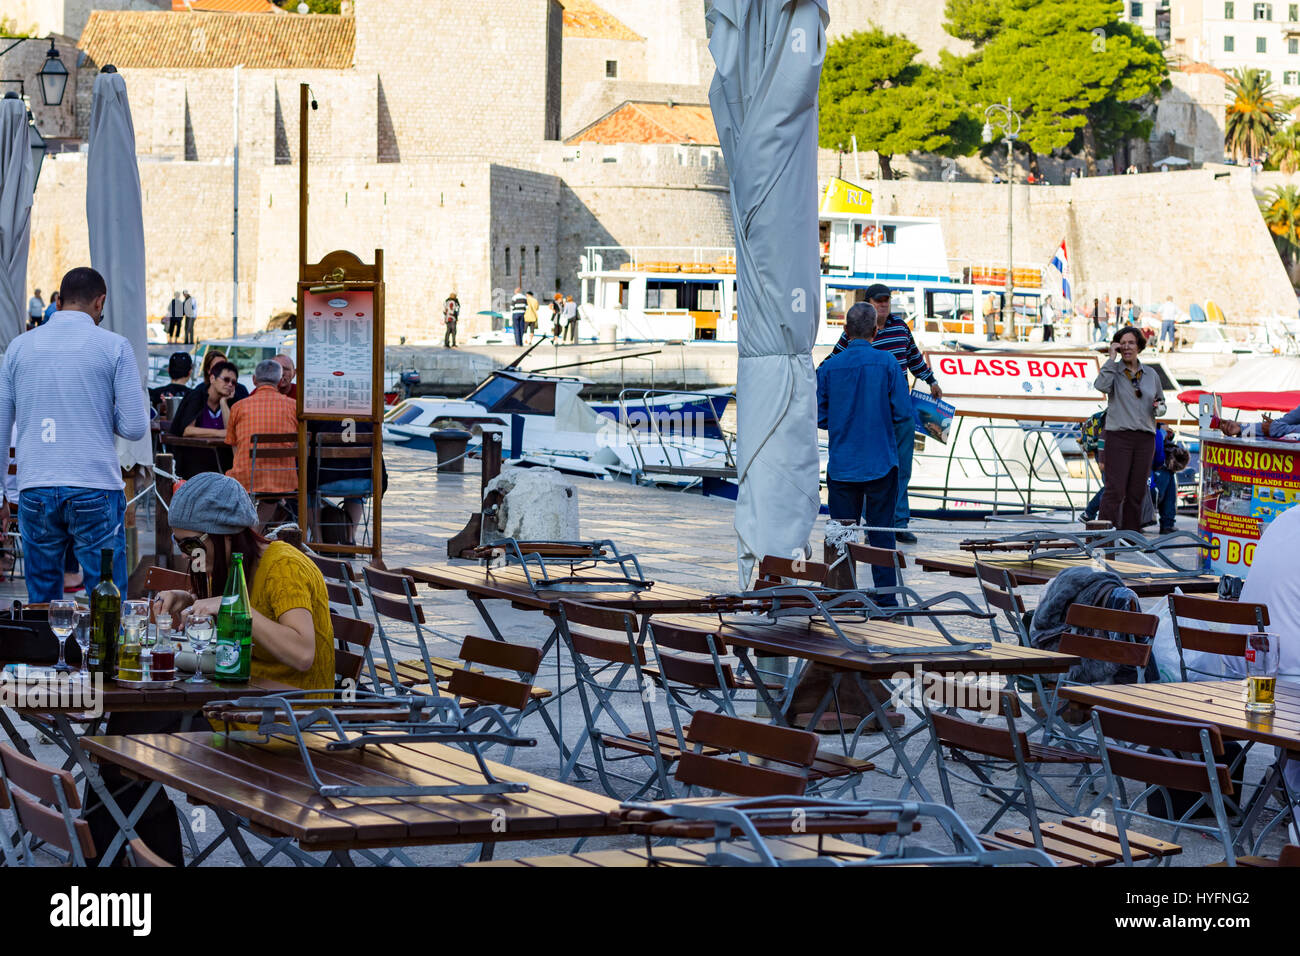 Marina en la ciudad vieja de Dubrovnik. Foto de stock